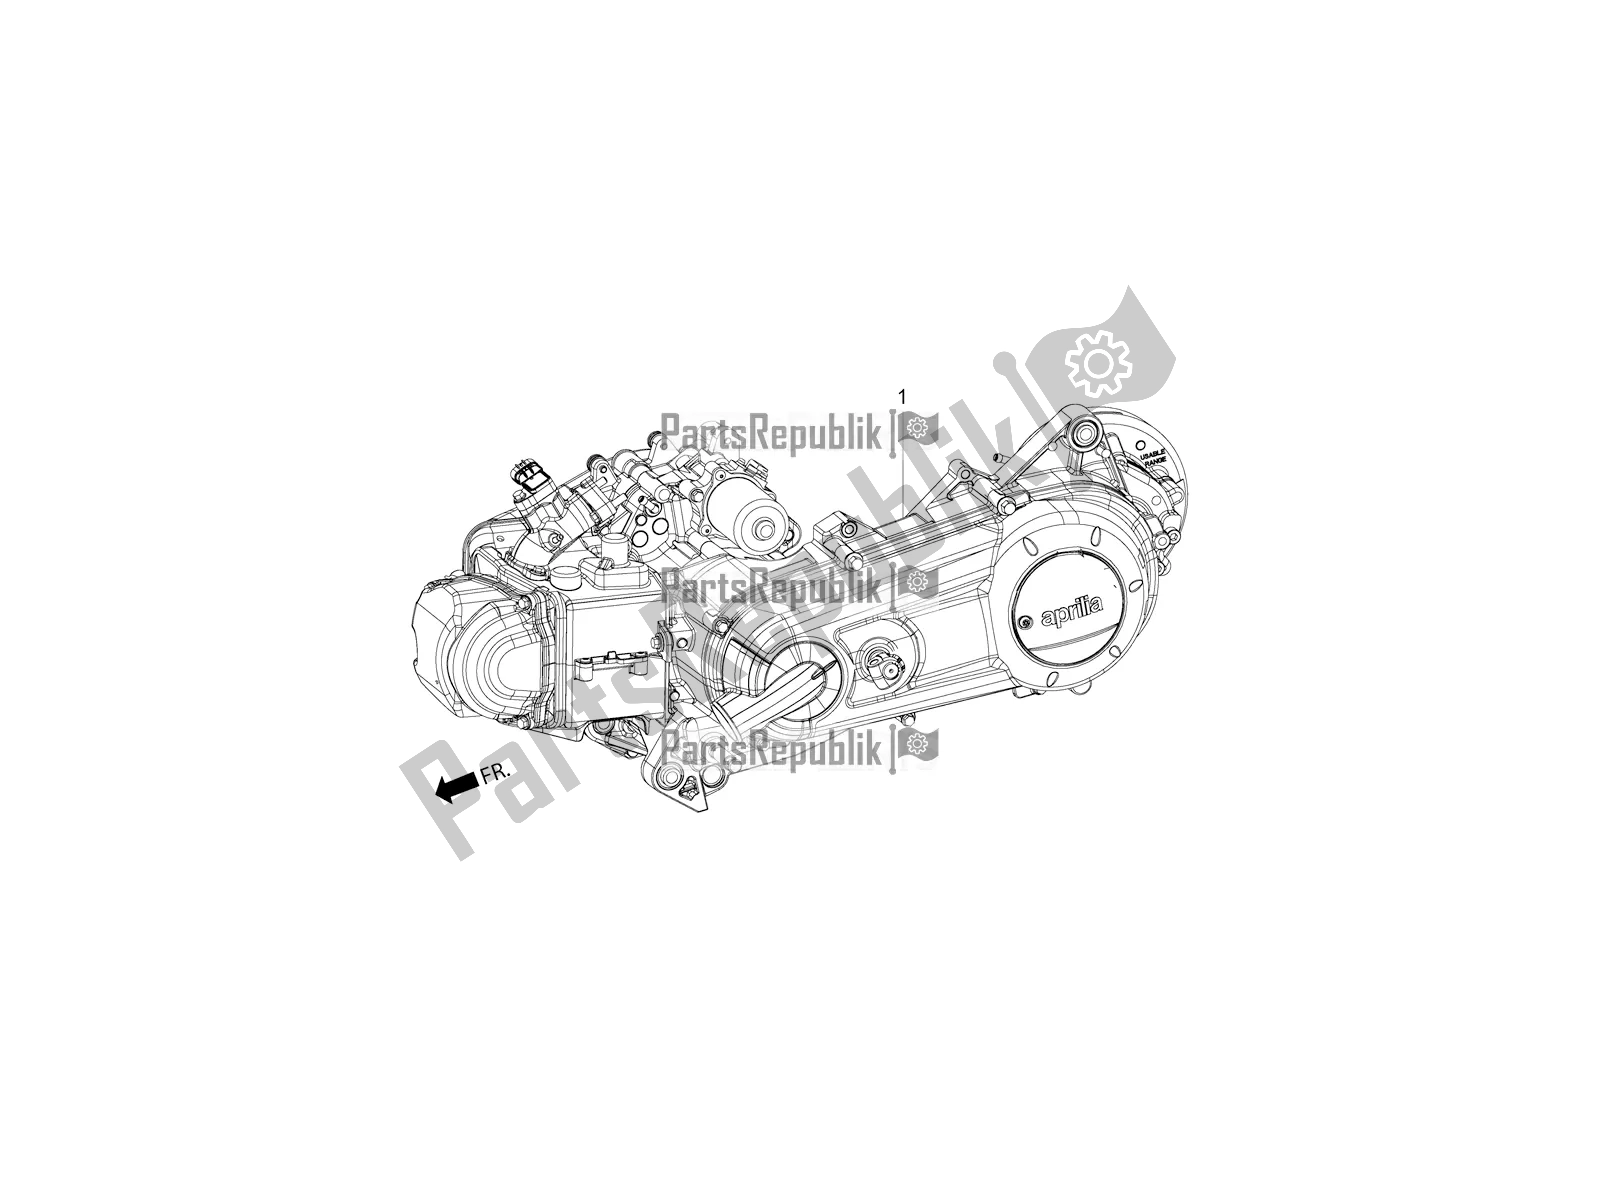 Toutes les pièces pour le Complete Engine du Aprilia SR 125 HE Carb 2019